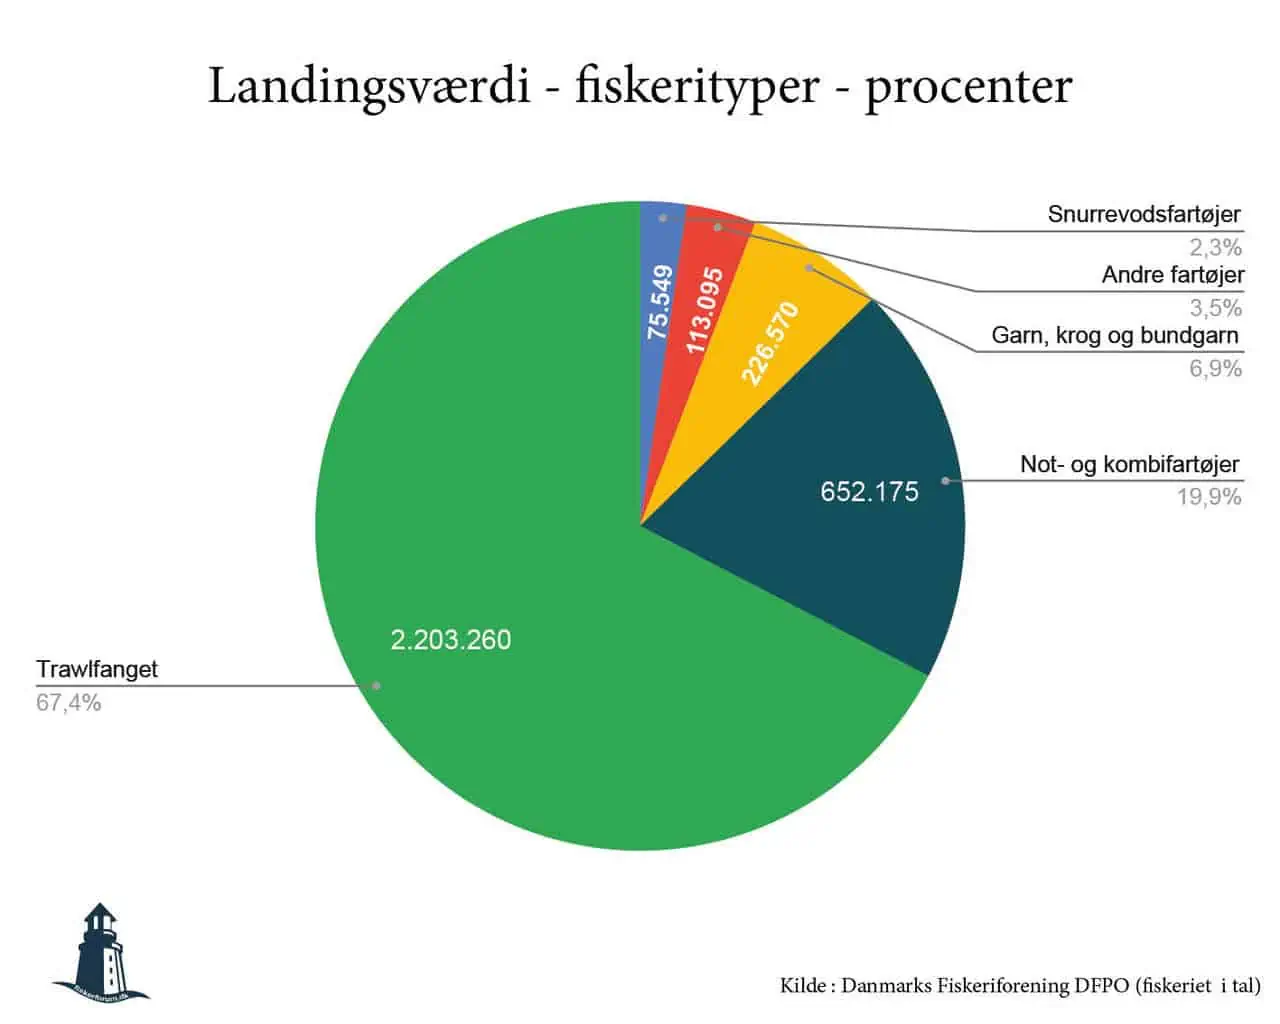 Prehn´s grønne ambitioner hindre danskernes adgang til klimavenlige fisk - Landingsværdi fordelt på fiskerityper i procenter